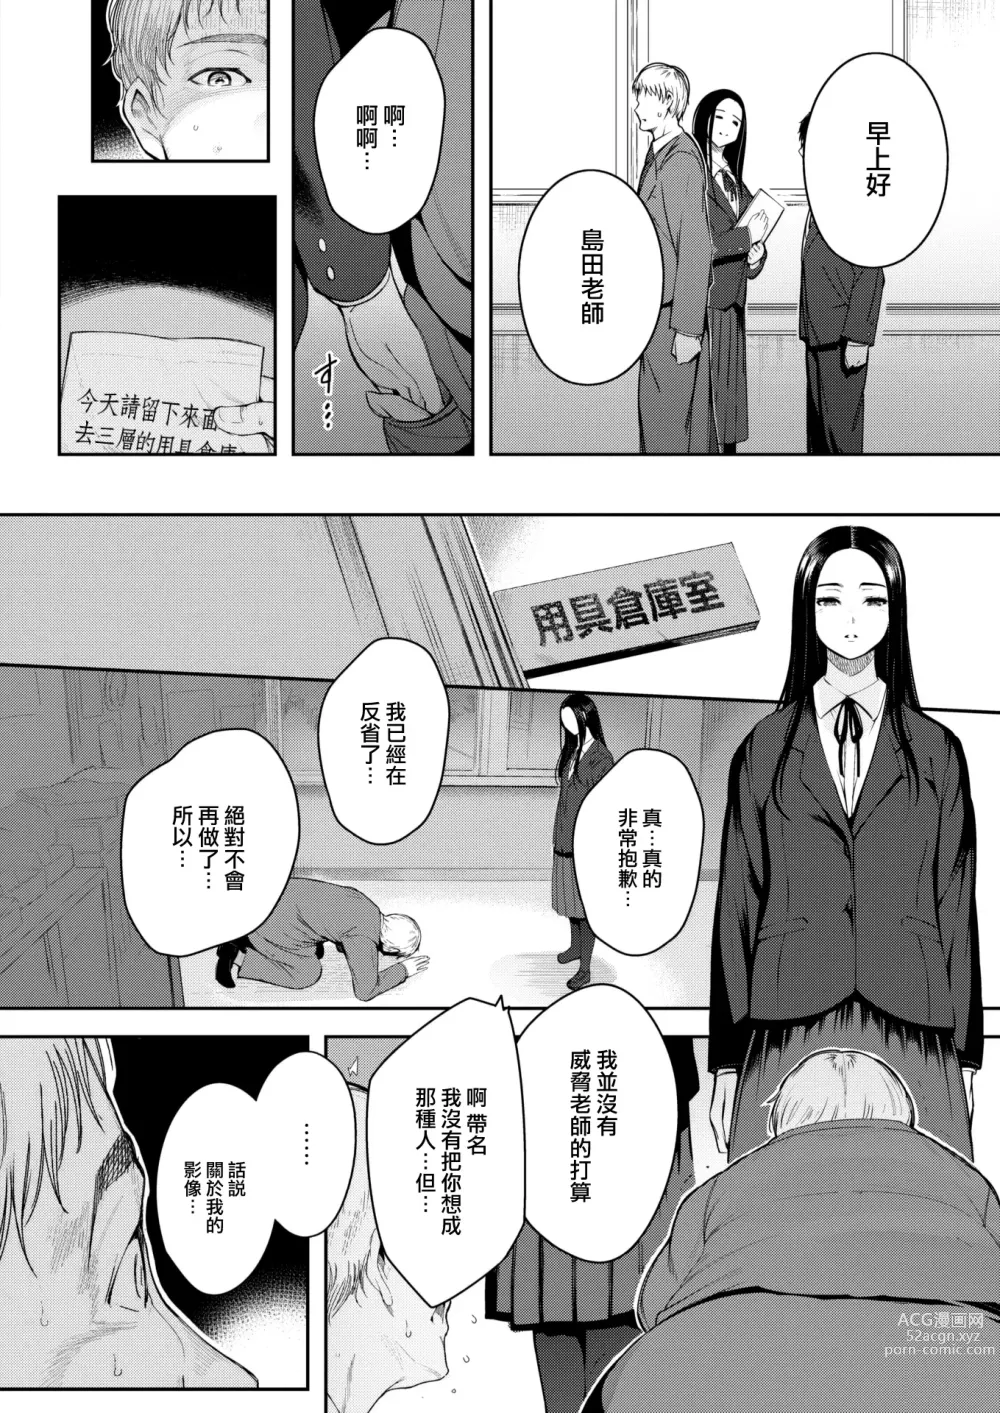 Page 5 of manga Kankou